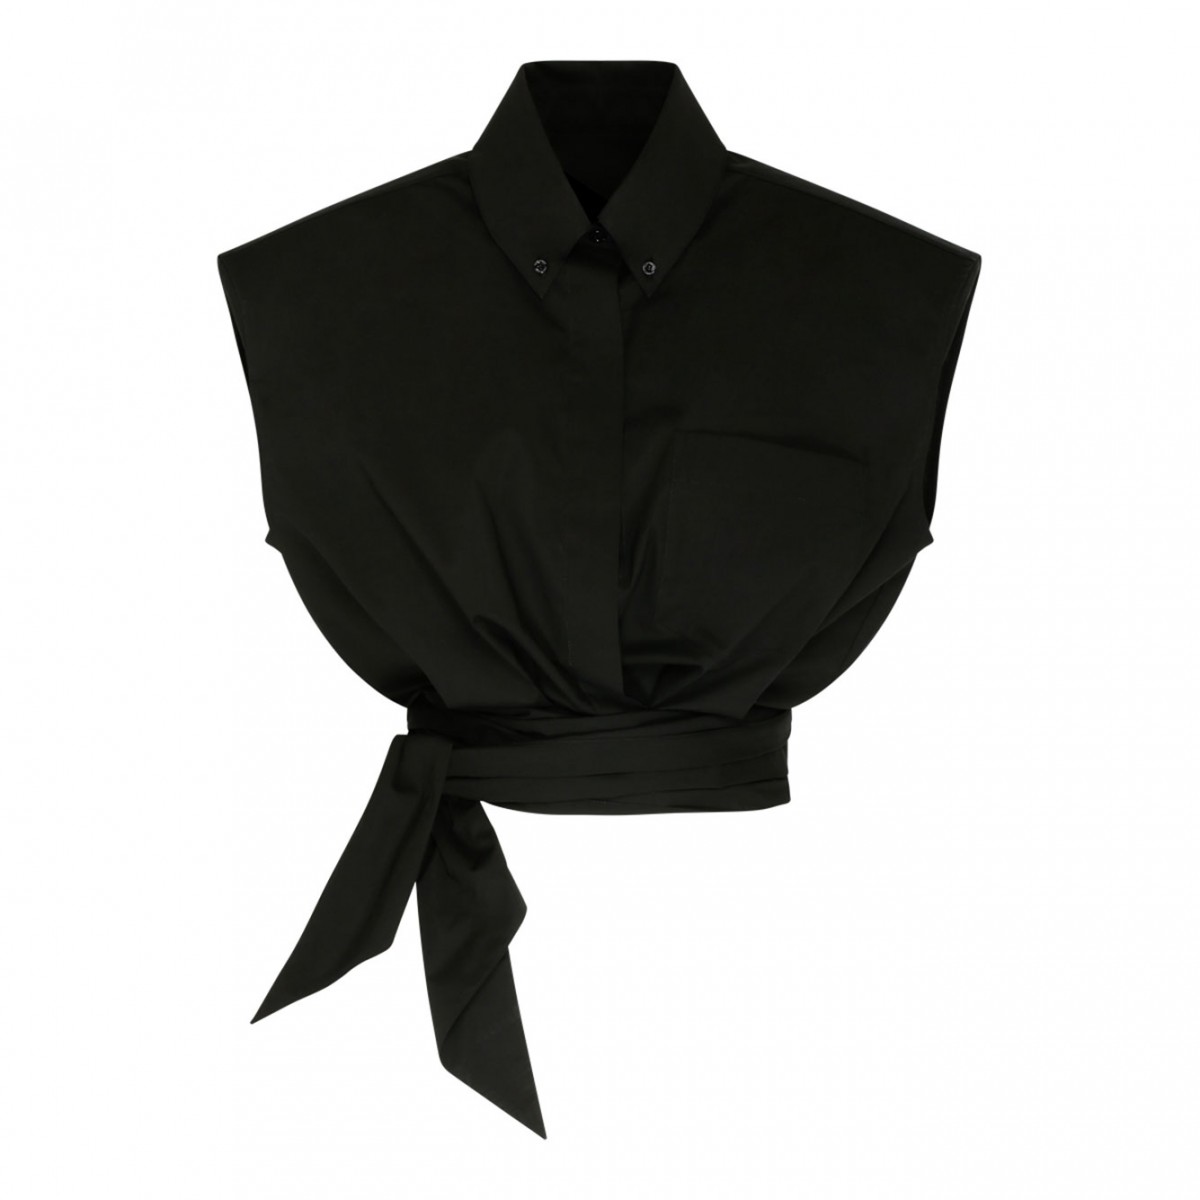 Alexandre Vauthier Black Stretch Cotton Wrap Design Shirt.